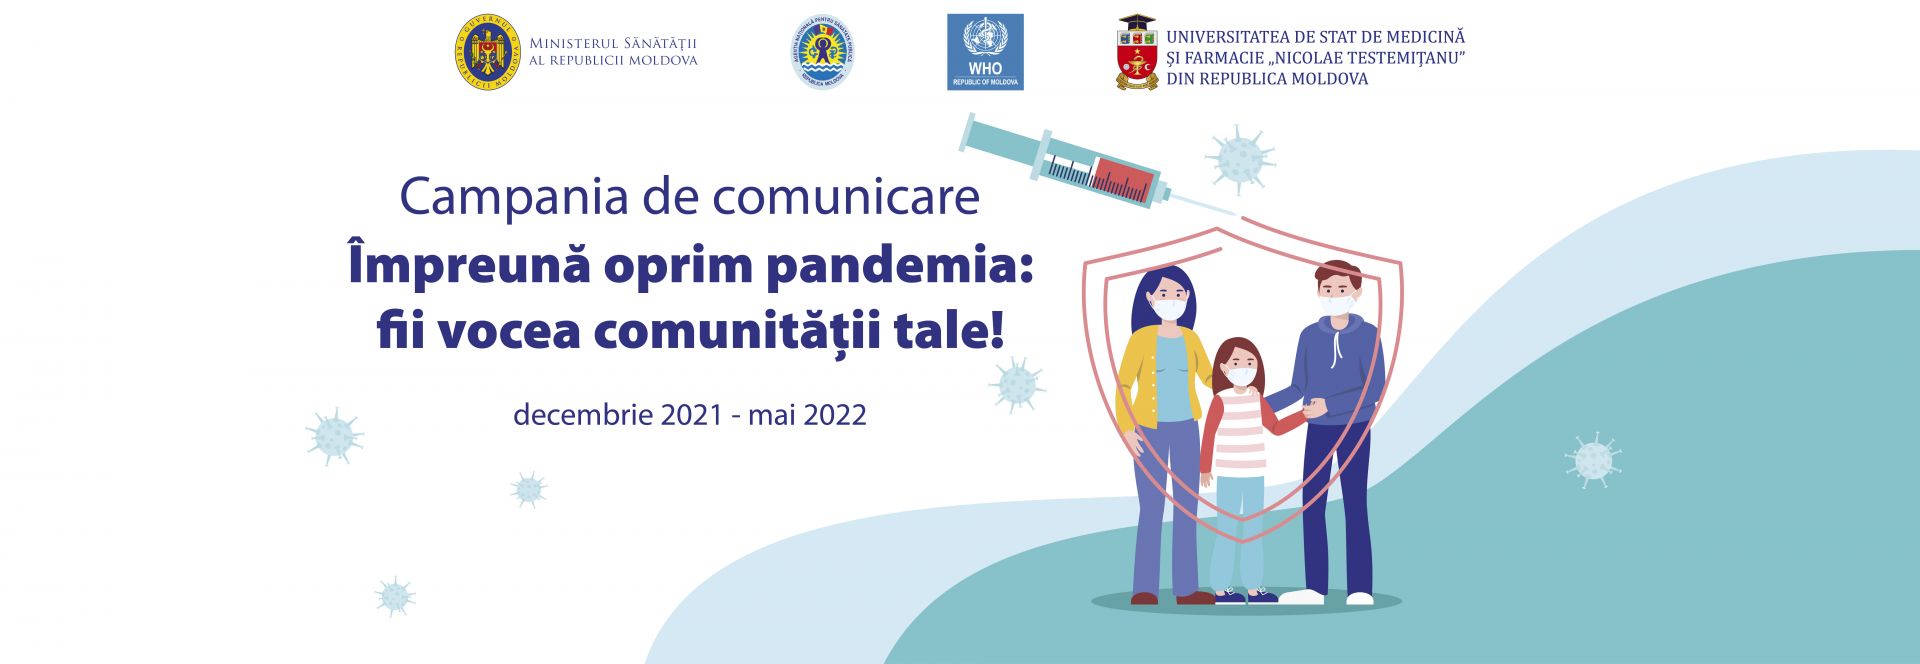 Împreună oprim pandemia: fii vocea comunității tale!: campanie de comunicare